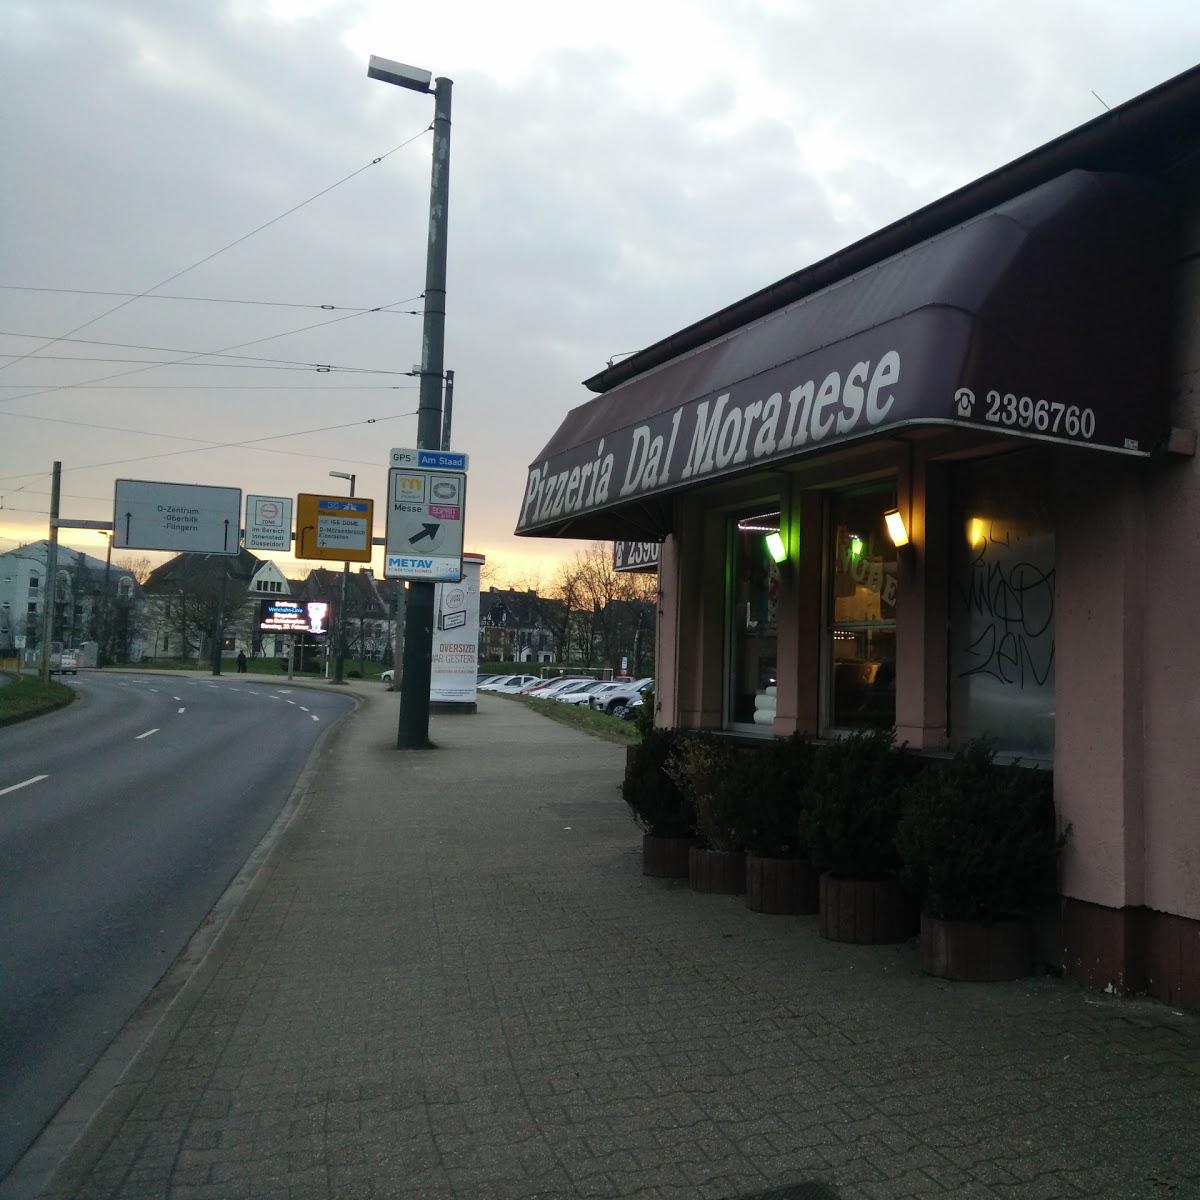 Restaurant "Pizzeria Dal Moranese - Pizza, Pasta, Vegetarische Pizza in Düsseldorf Grafenberg" in Düsseldorf